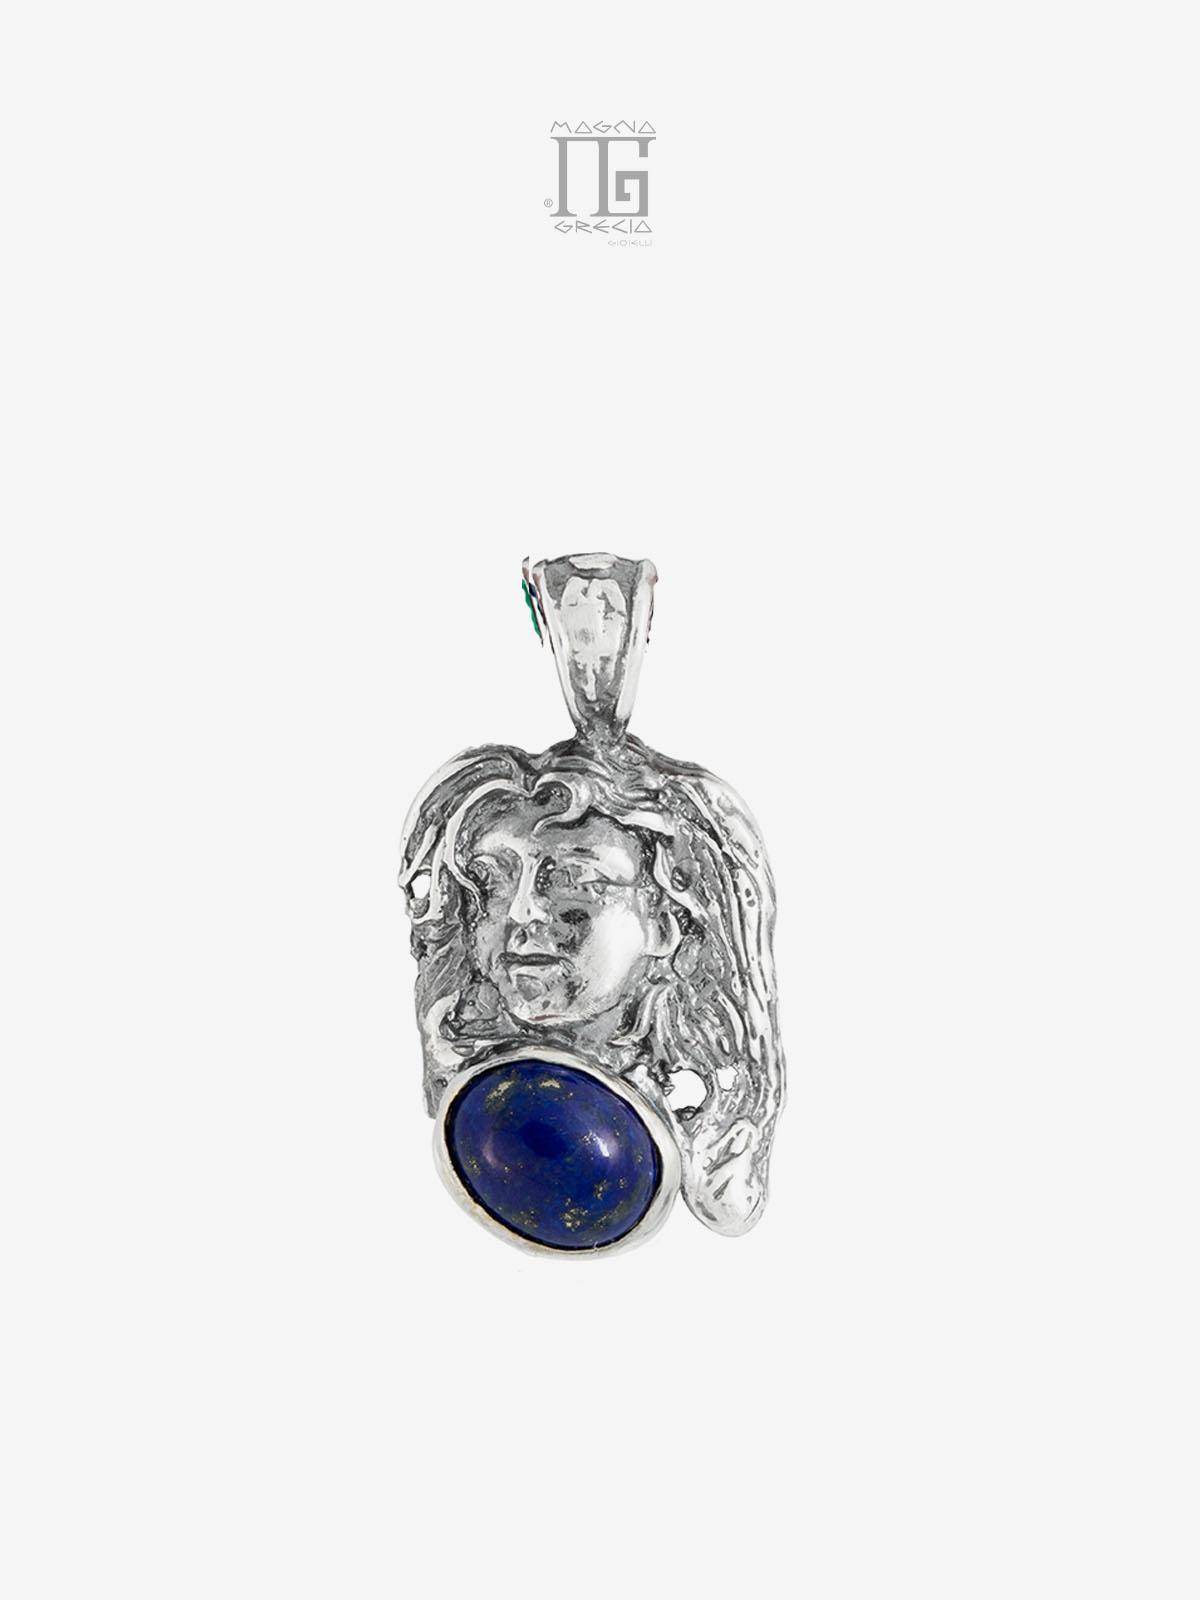 Colgante “Tranquilidad” en Plata con el Rostro de la Diosa Venus y Lapislázuli Azul Cod. MGK 3850 V-4